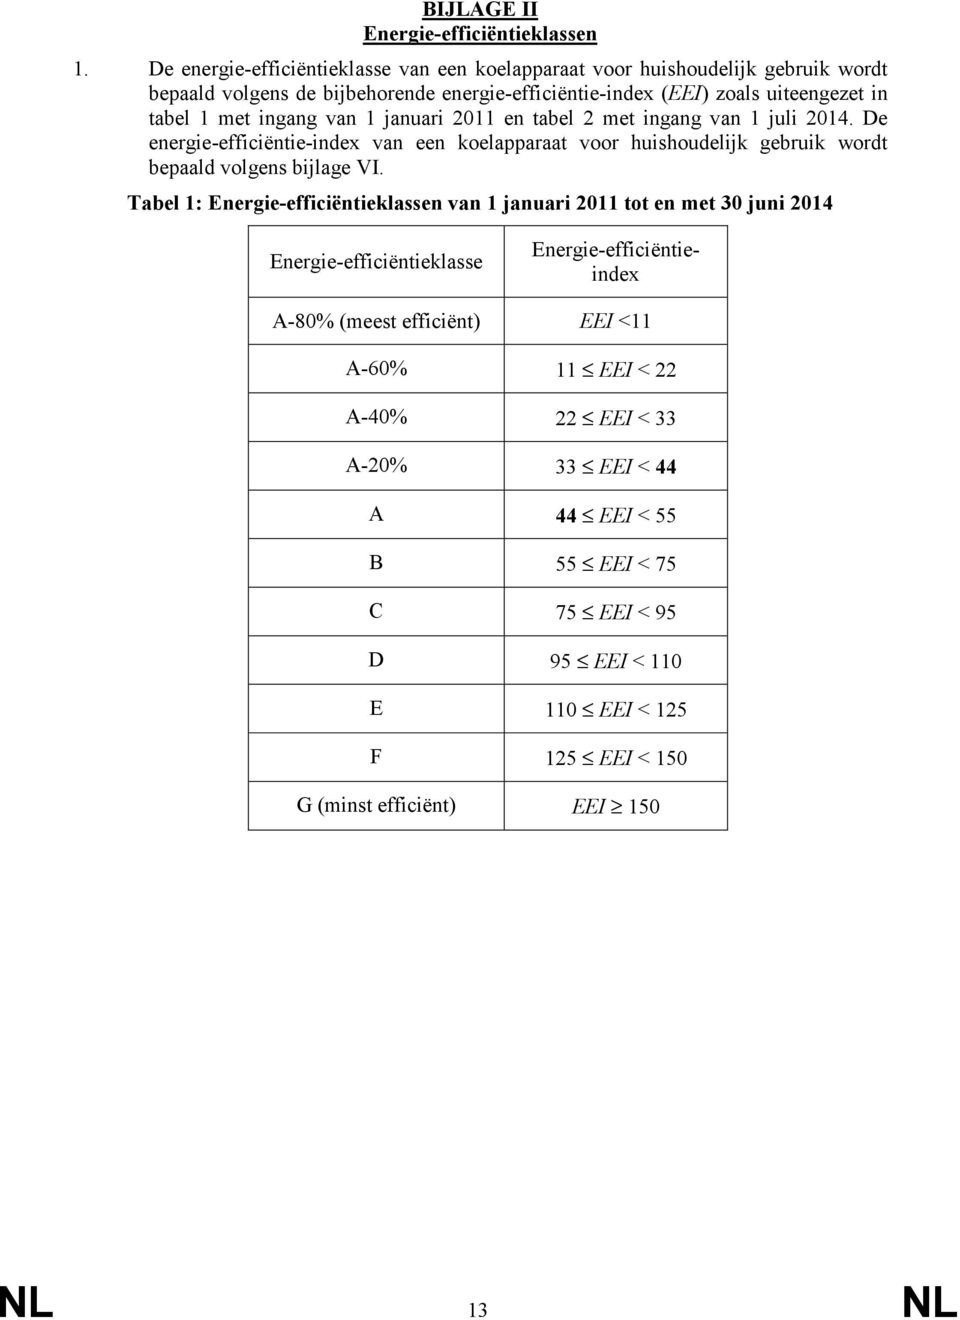 ingang van 1 januari 2011 en tabel 2 met ingang van 1 juli 2014. De energie-efficiëntie-index van een koelapparaat voor huishoudelijk gebruik wordt bepaald volgens bijlage VI.